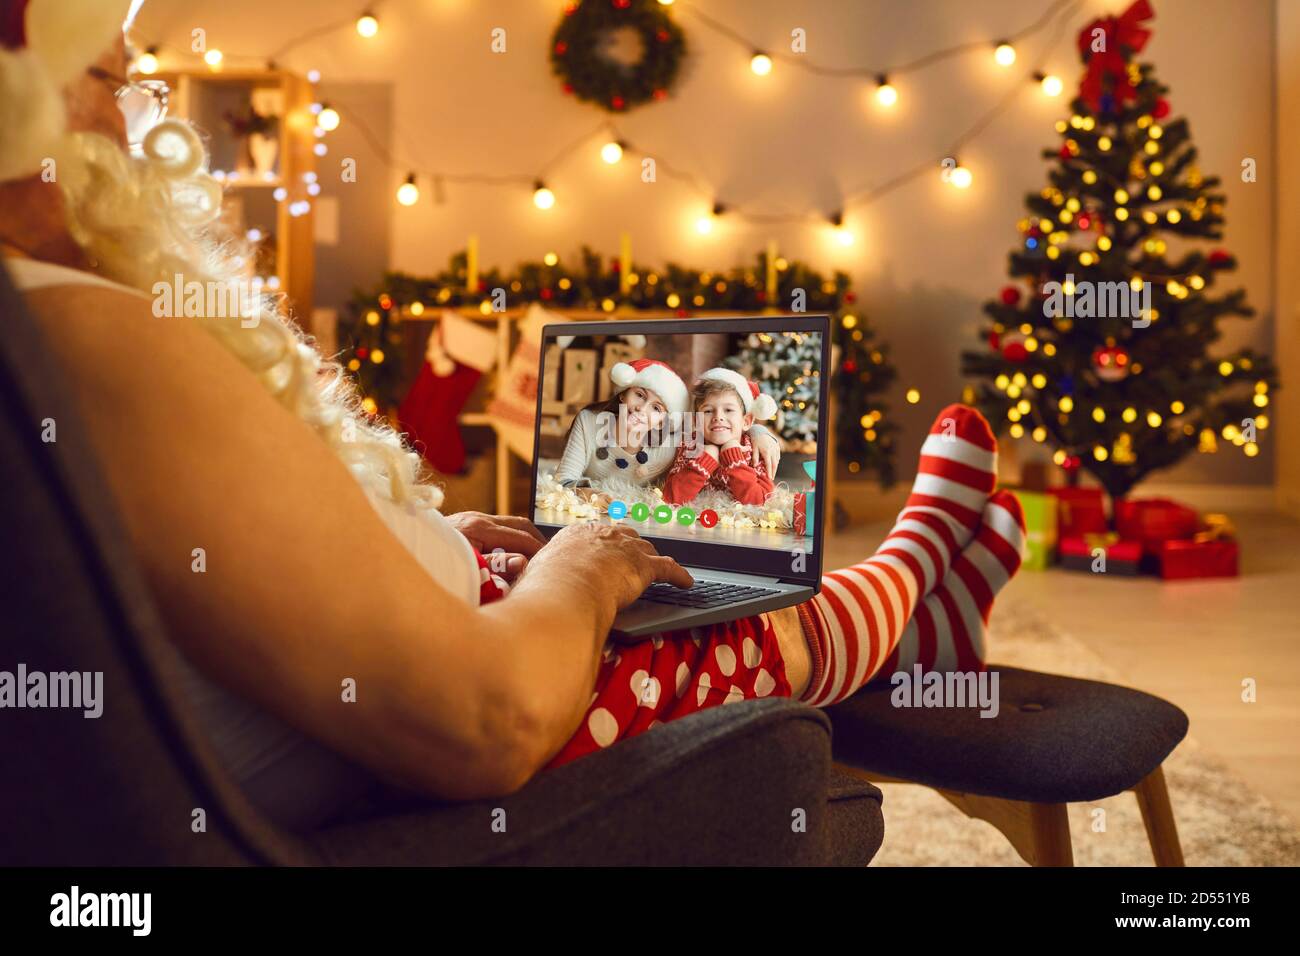 Weihnachtsmann in Kostüm mit weißem Bart chatten mit Enkeln online Auf dem Laptop während der Videoaufzeichnung Stockfoto